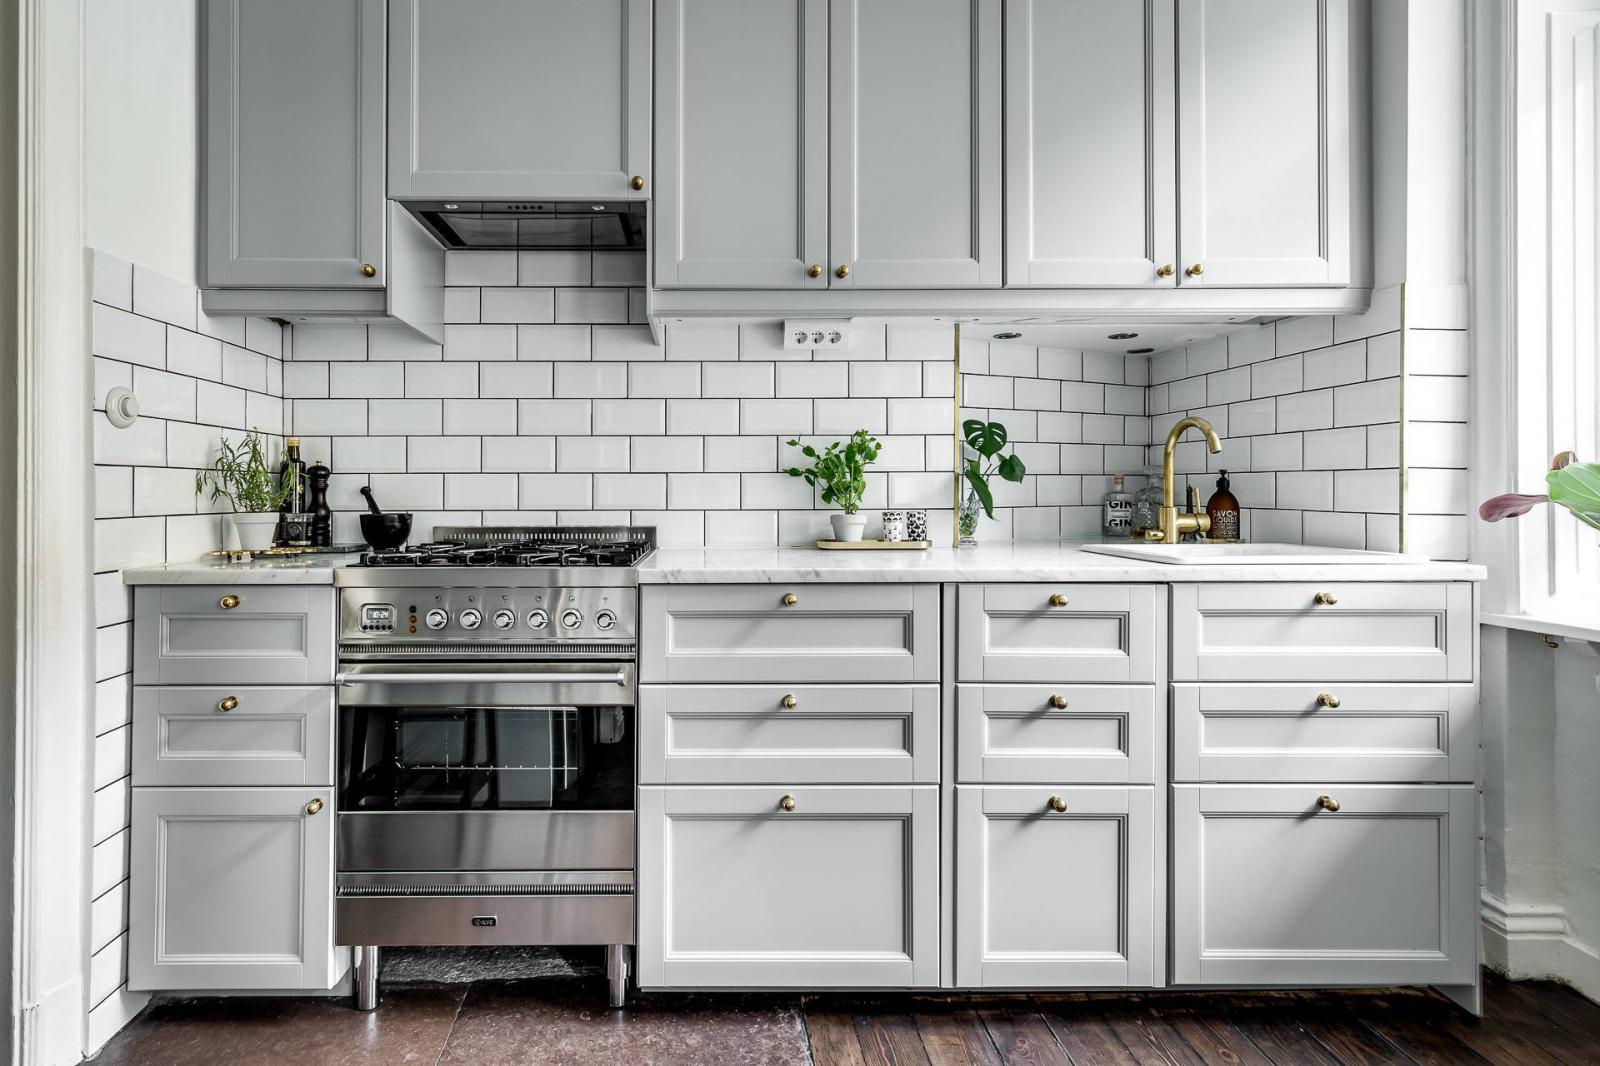 Hình ảnh cận cảnh hệ tủ bếp màu trắng xám gồm nhiều ngăn kéo, tay nắm kim loại, tường bếp ốp gạch trắng, cây xanh đặt trên bệ bếp